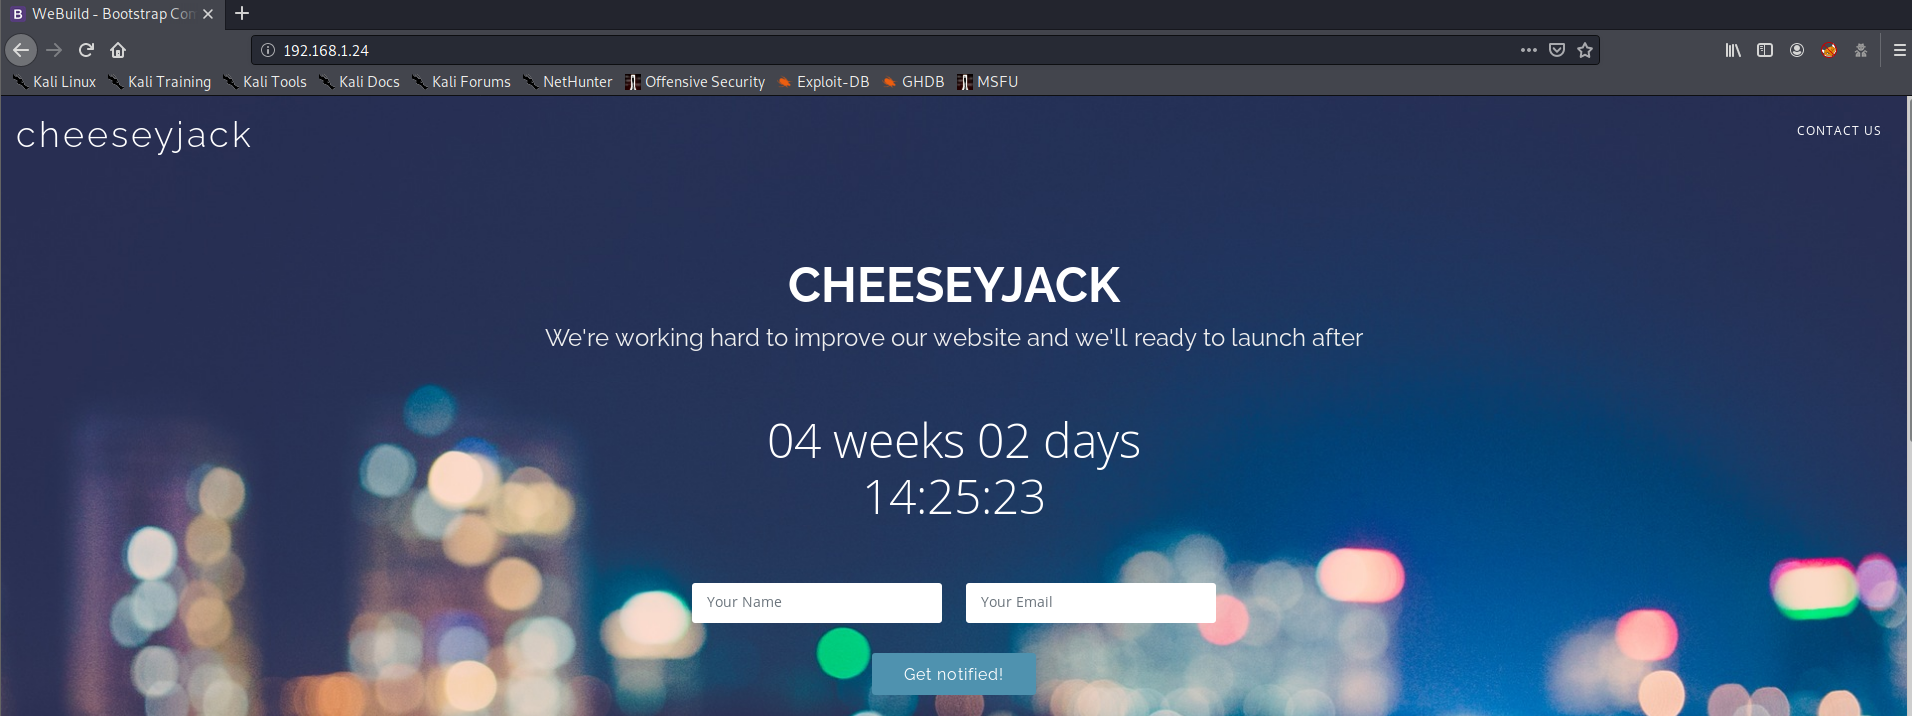 CheeseyJack website